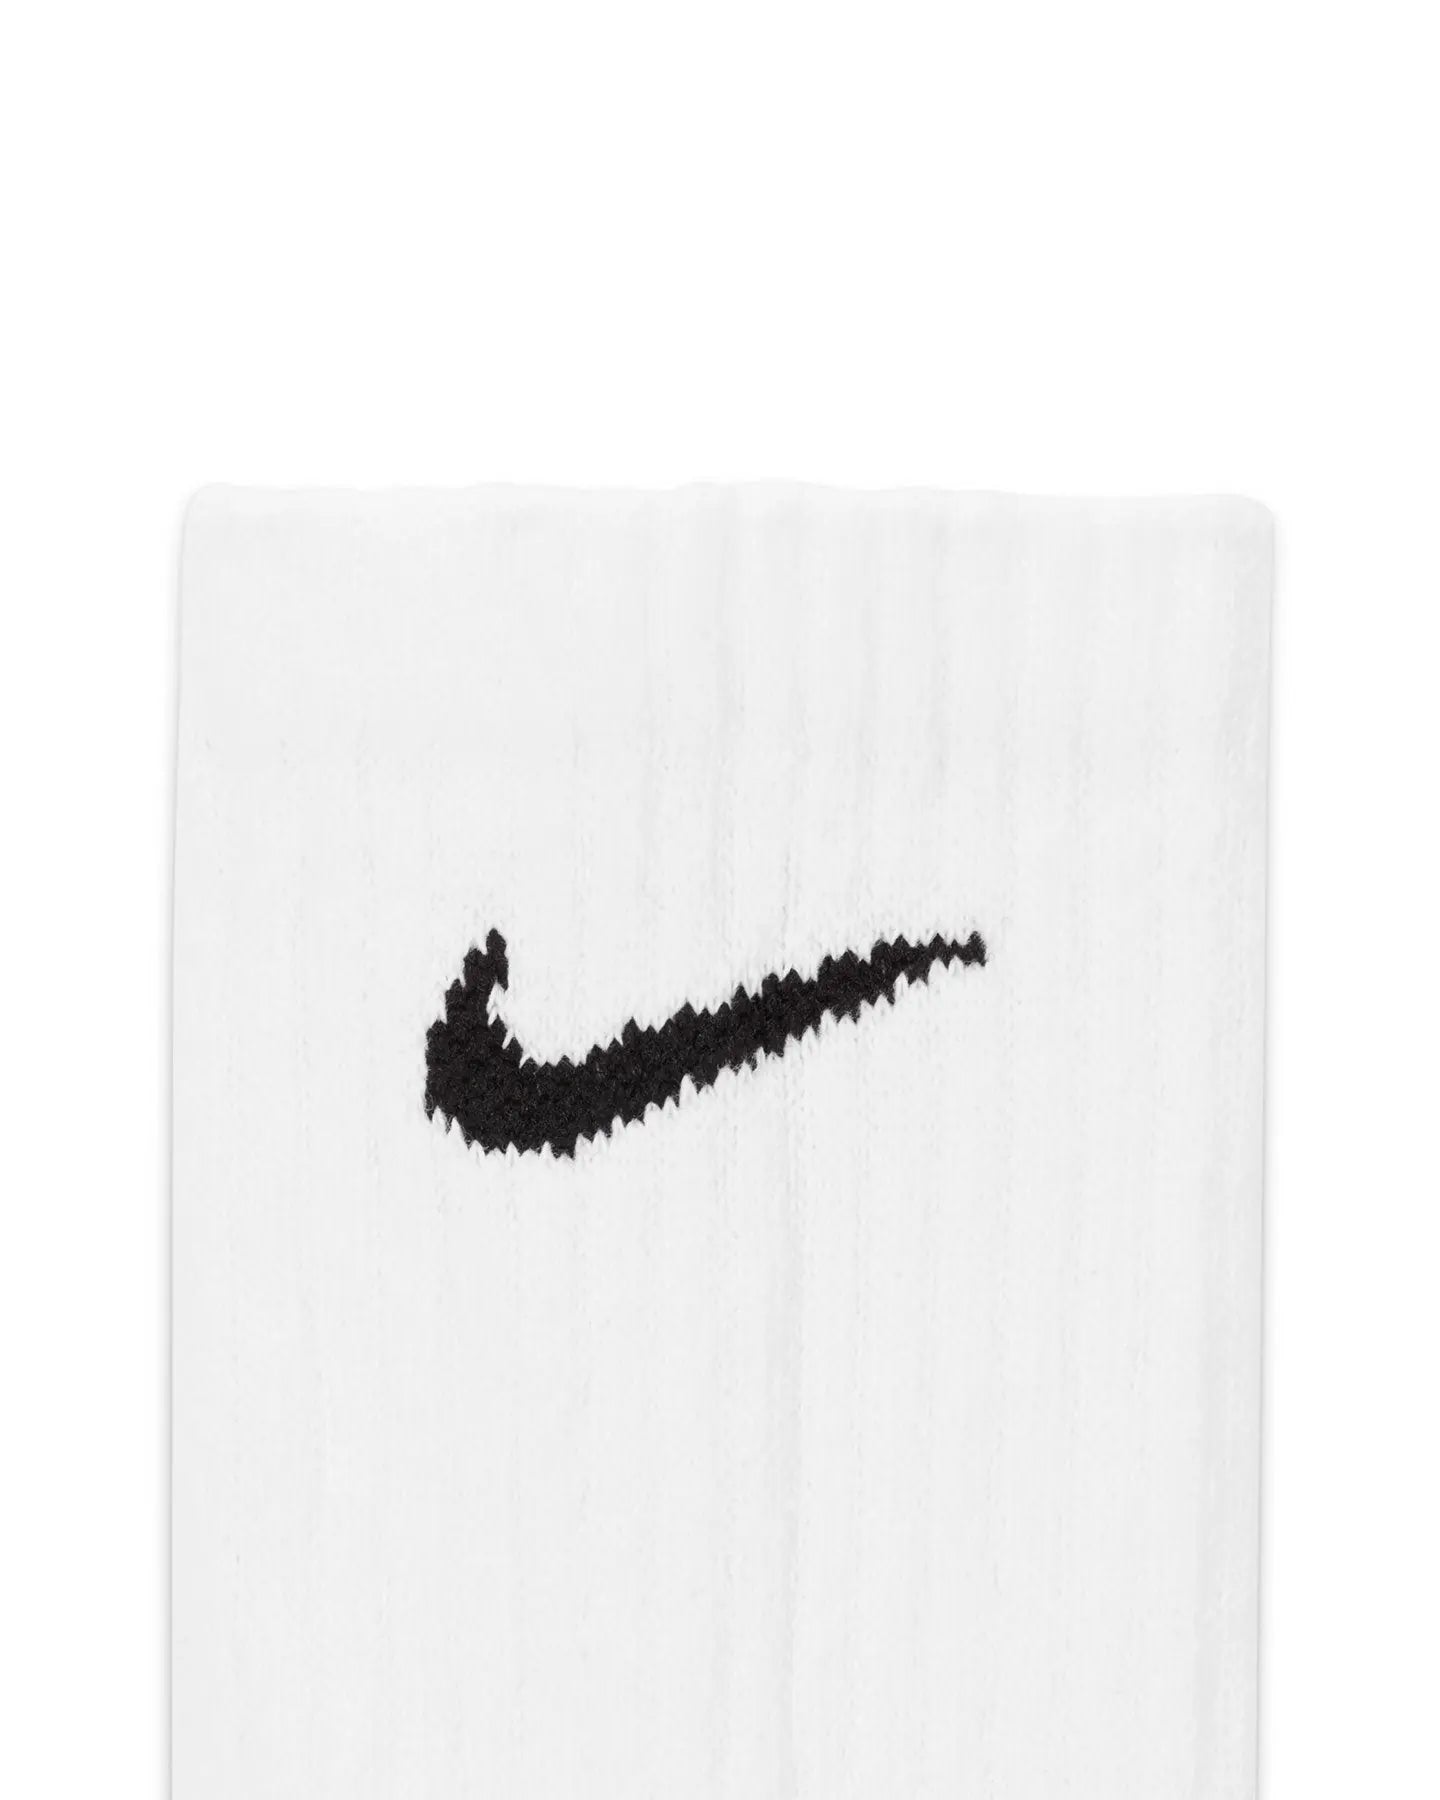 Nike Everyday Cushioned Sock 6 Pack - White / Black Socks